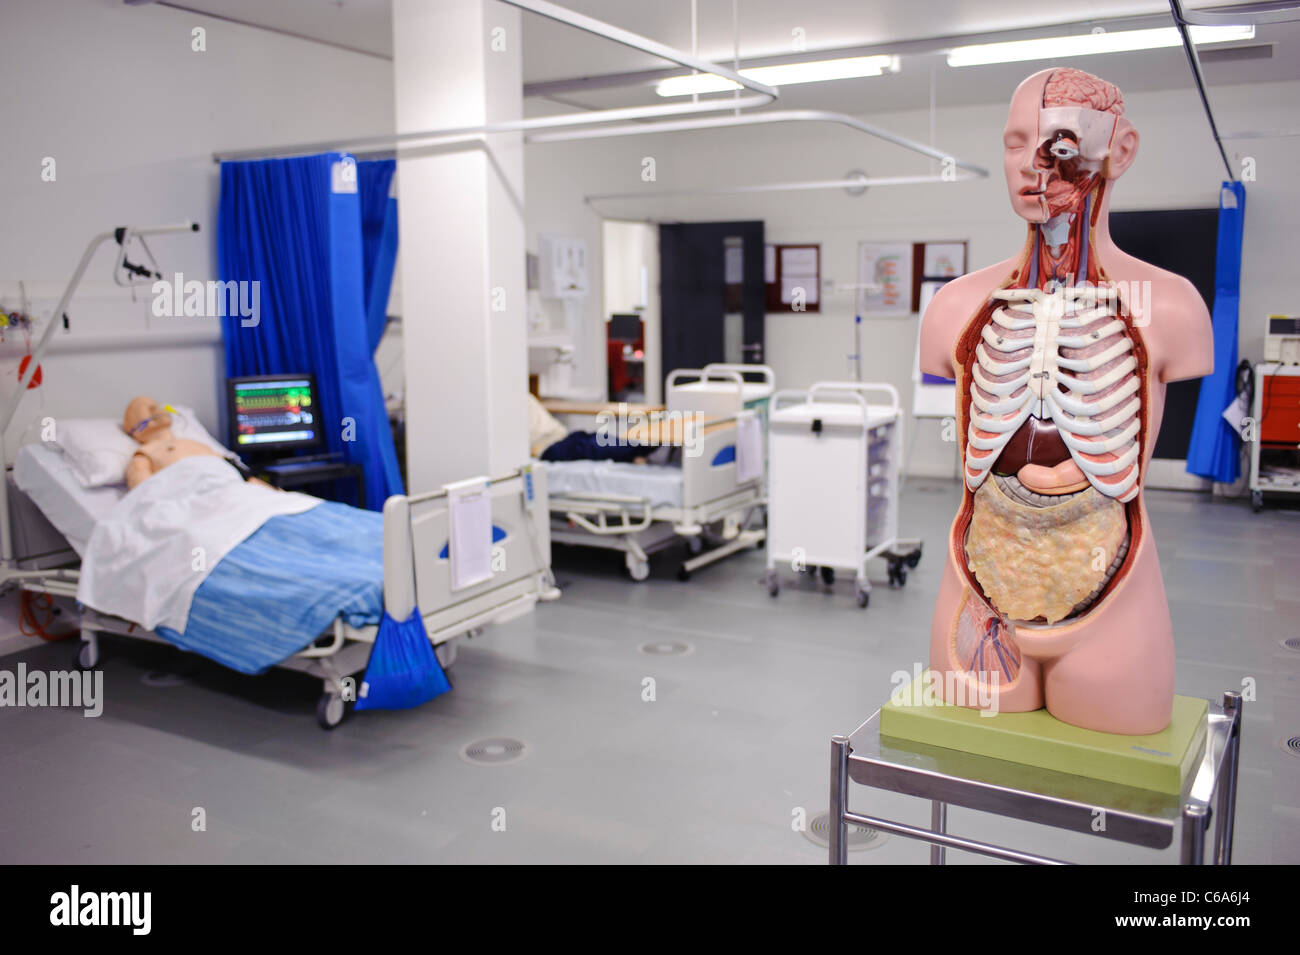 Anatomía Humana modelo anatómico hospital configurar habilidades clínicas lab paciente ficticio en la cama Foto de stock